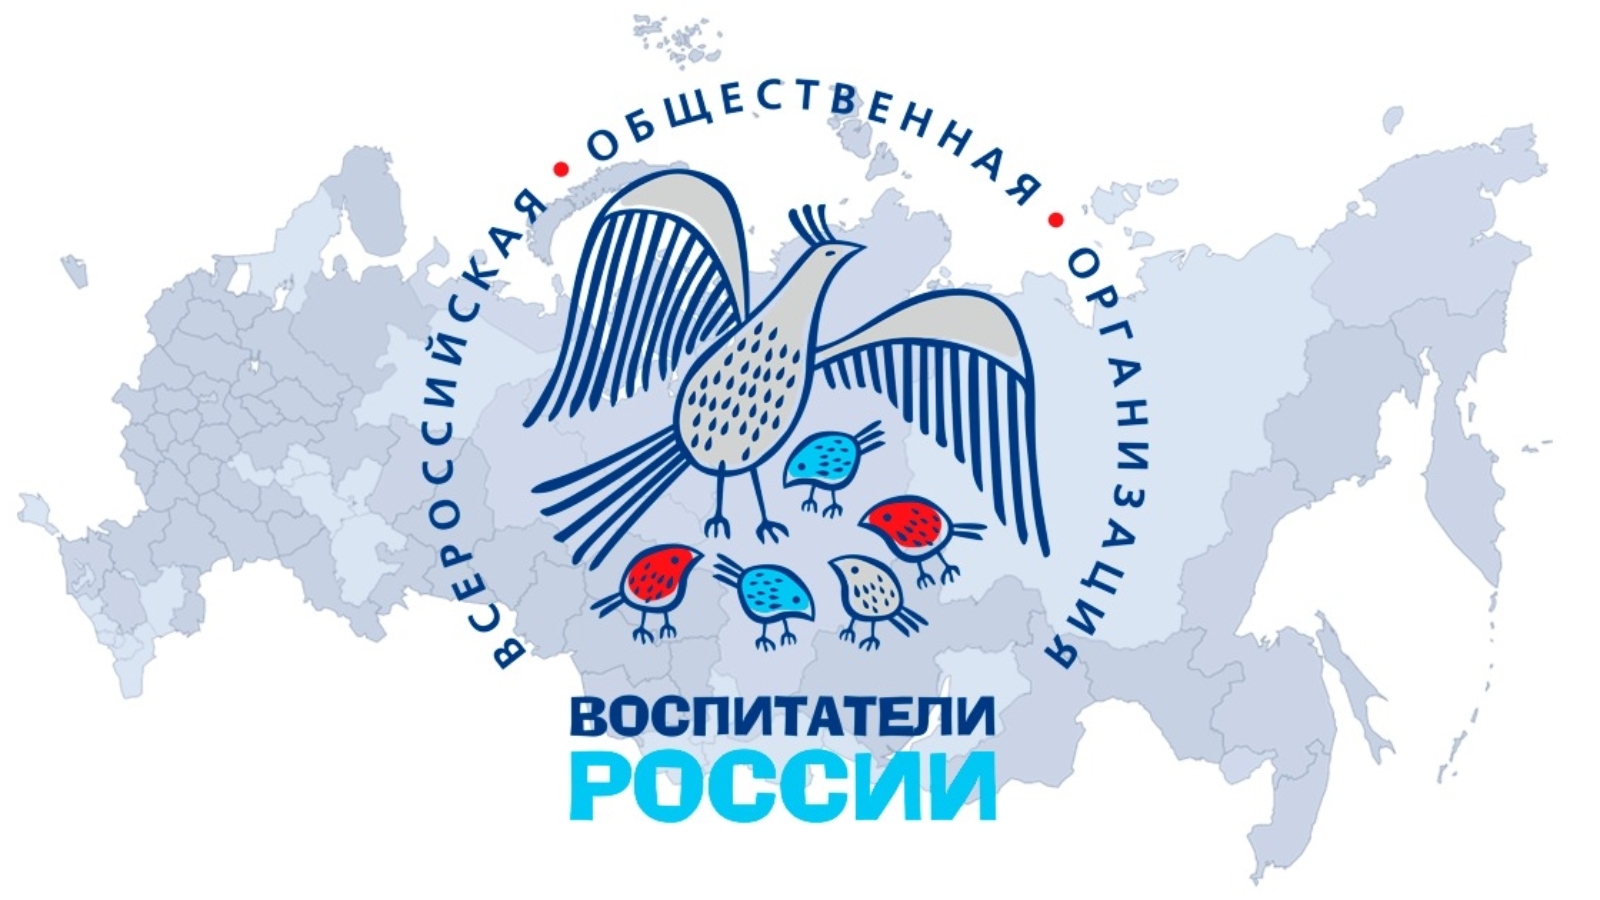 Педагог детского сада вошла в число победителей X Всероссийского конкурса «Воспитатели России»